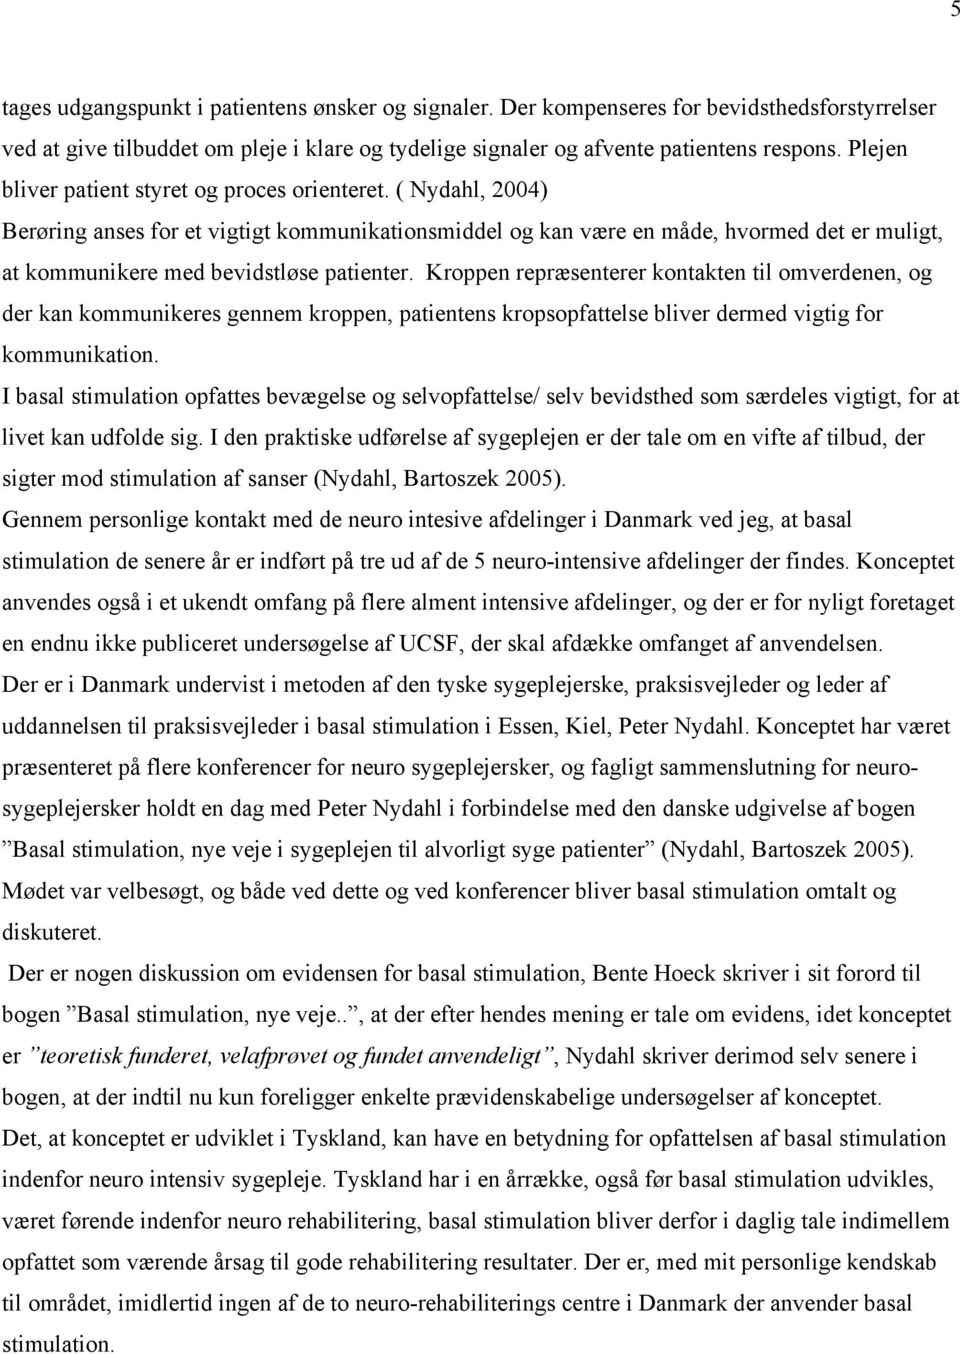 Basal stimulation set i et evidens perspektiv. - PDF Gratis download